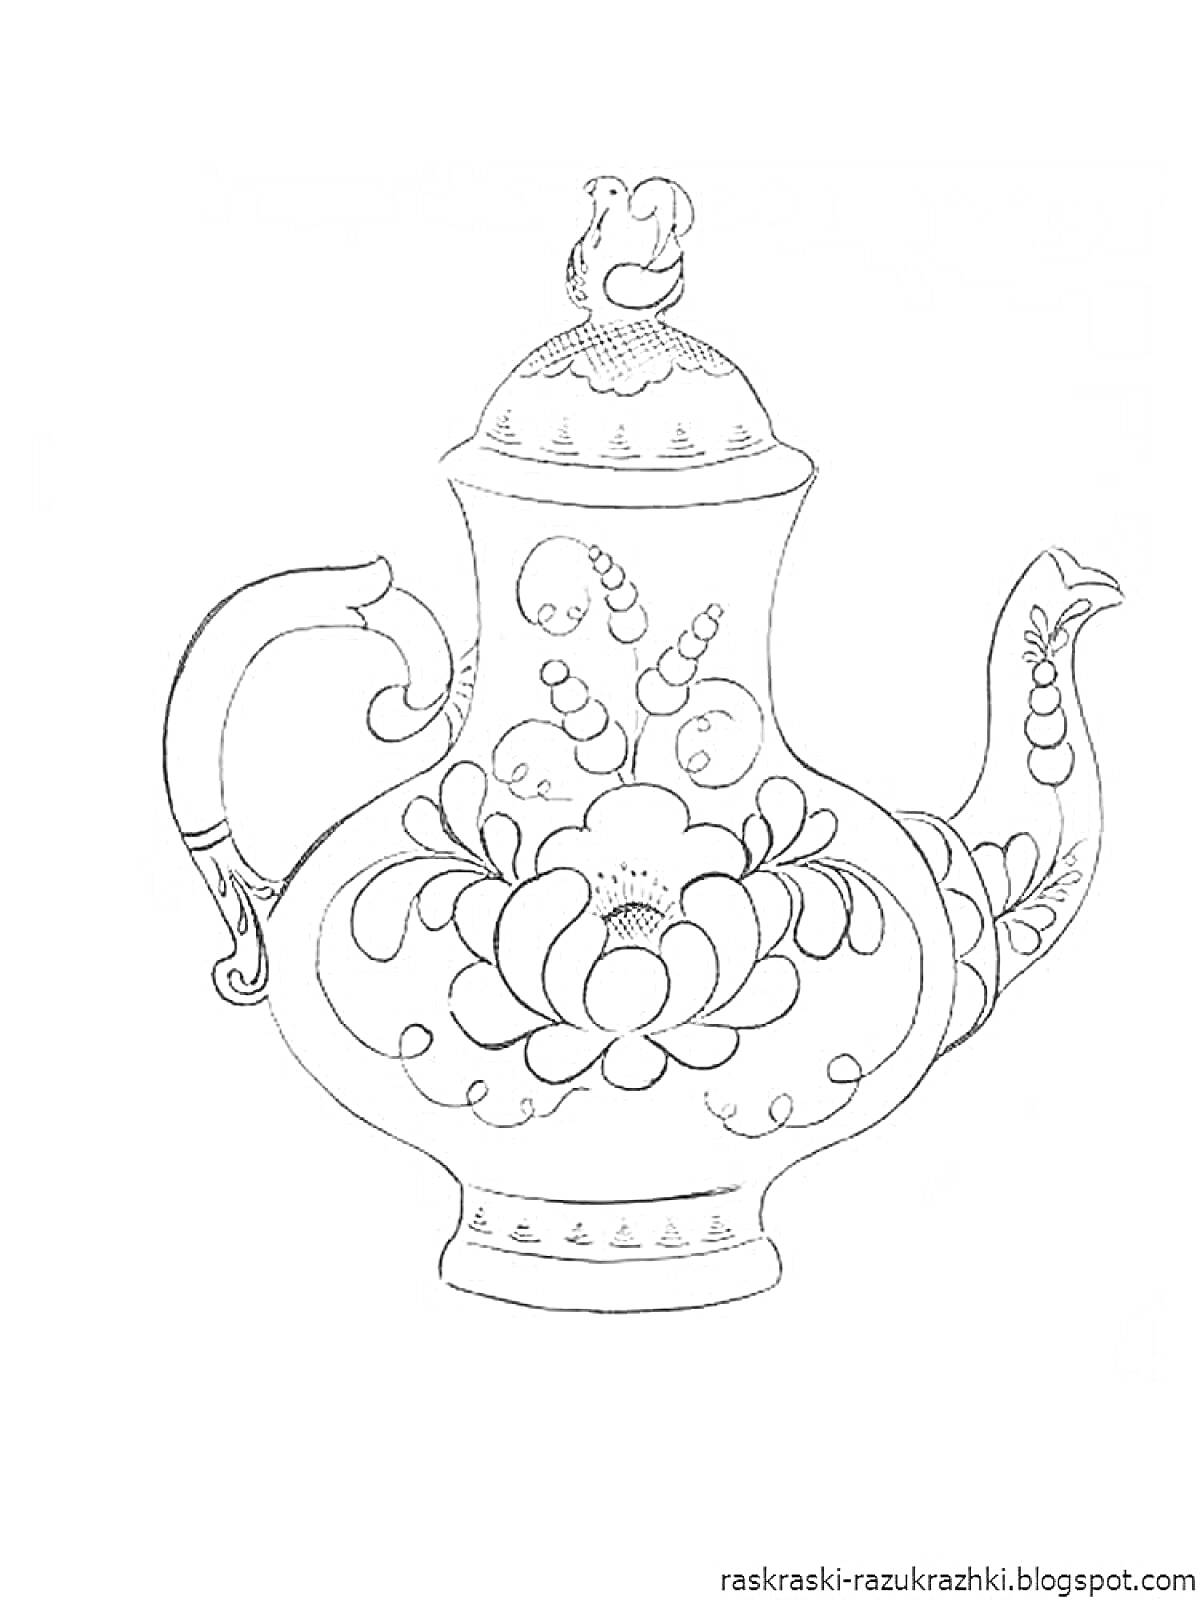 Раскраска гжельский чайник с узором и птицей на крышке